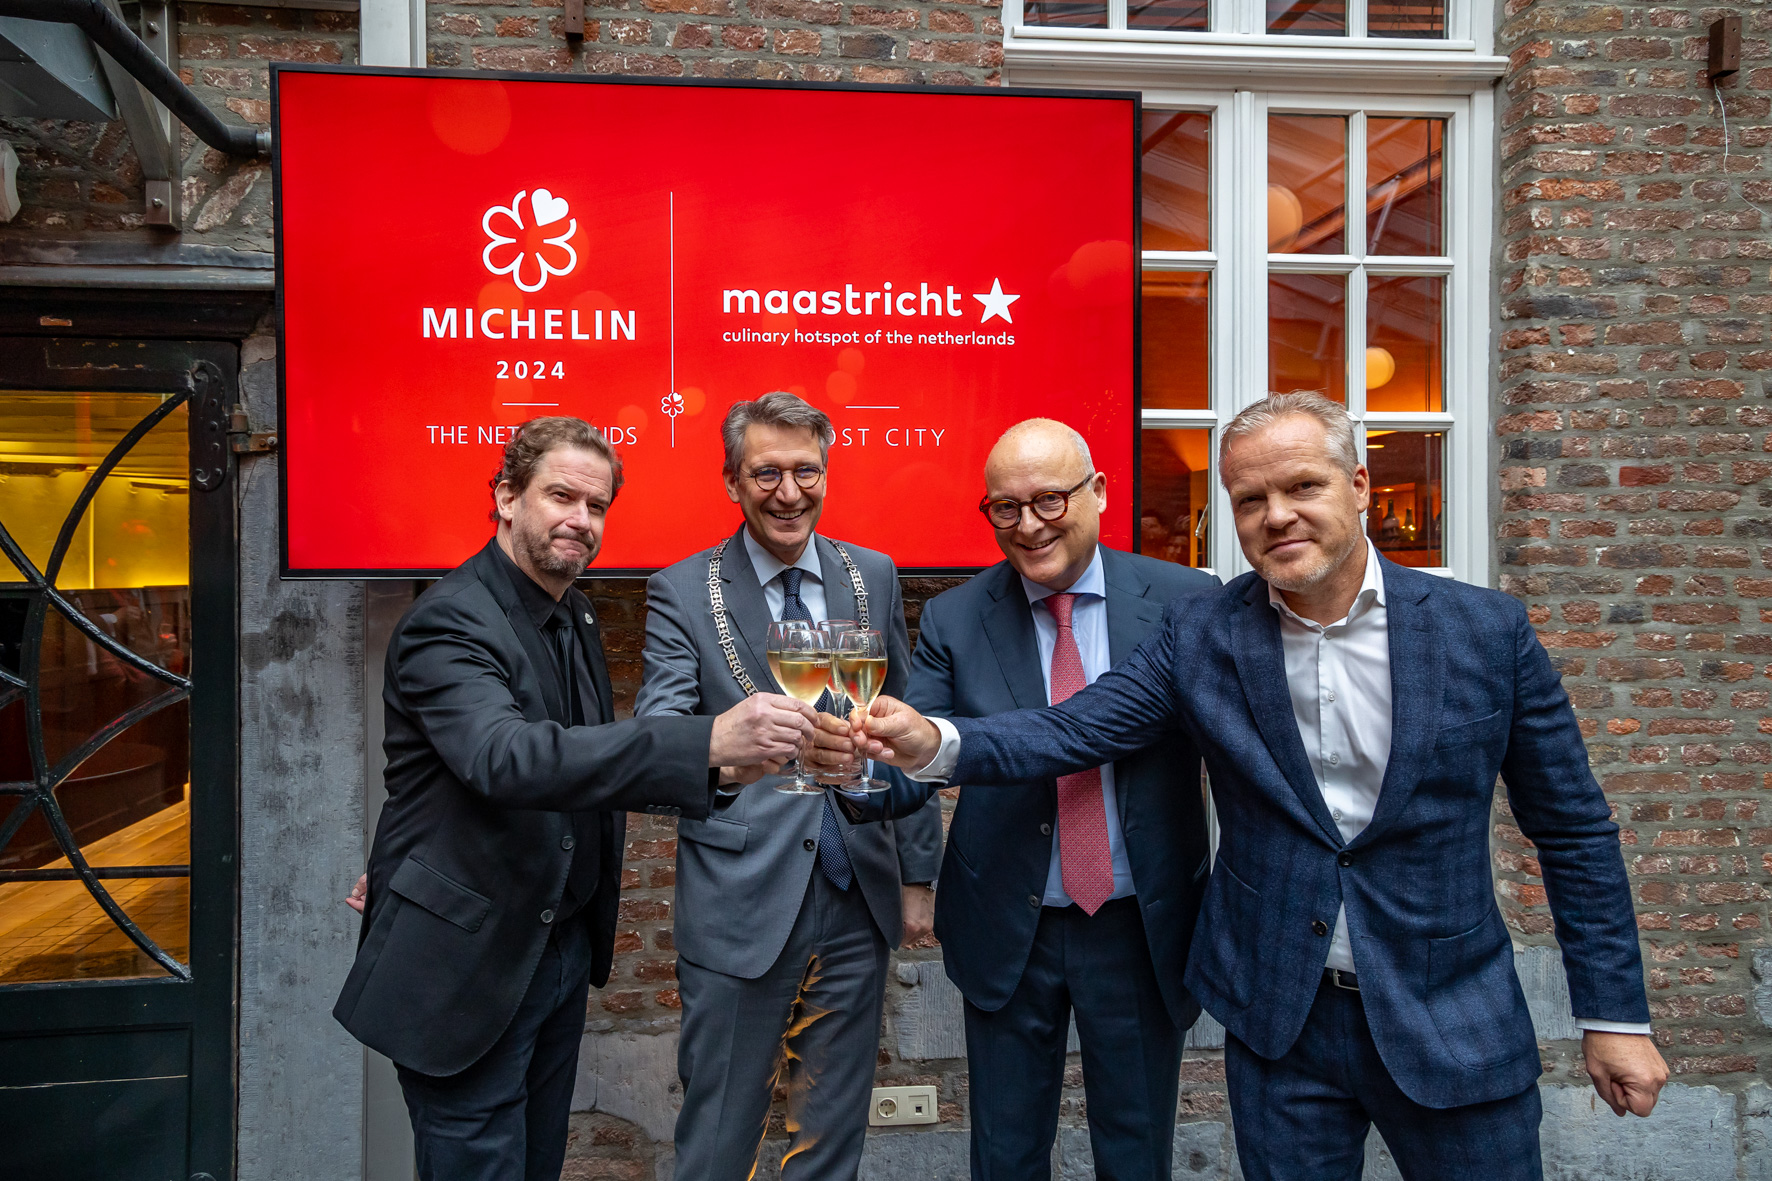 Michelin maakt nu ook zelf bekend de volgende Michelingids in Maastricht uit te reiken